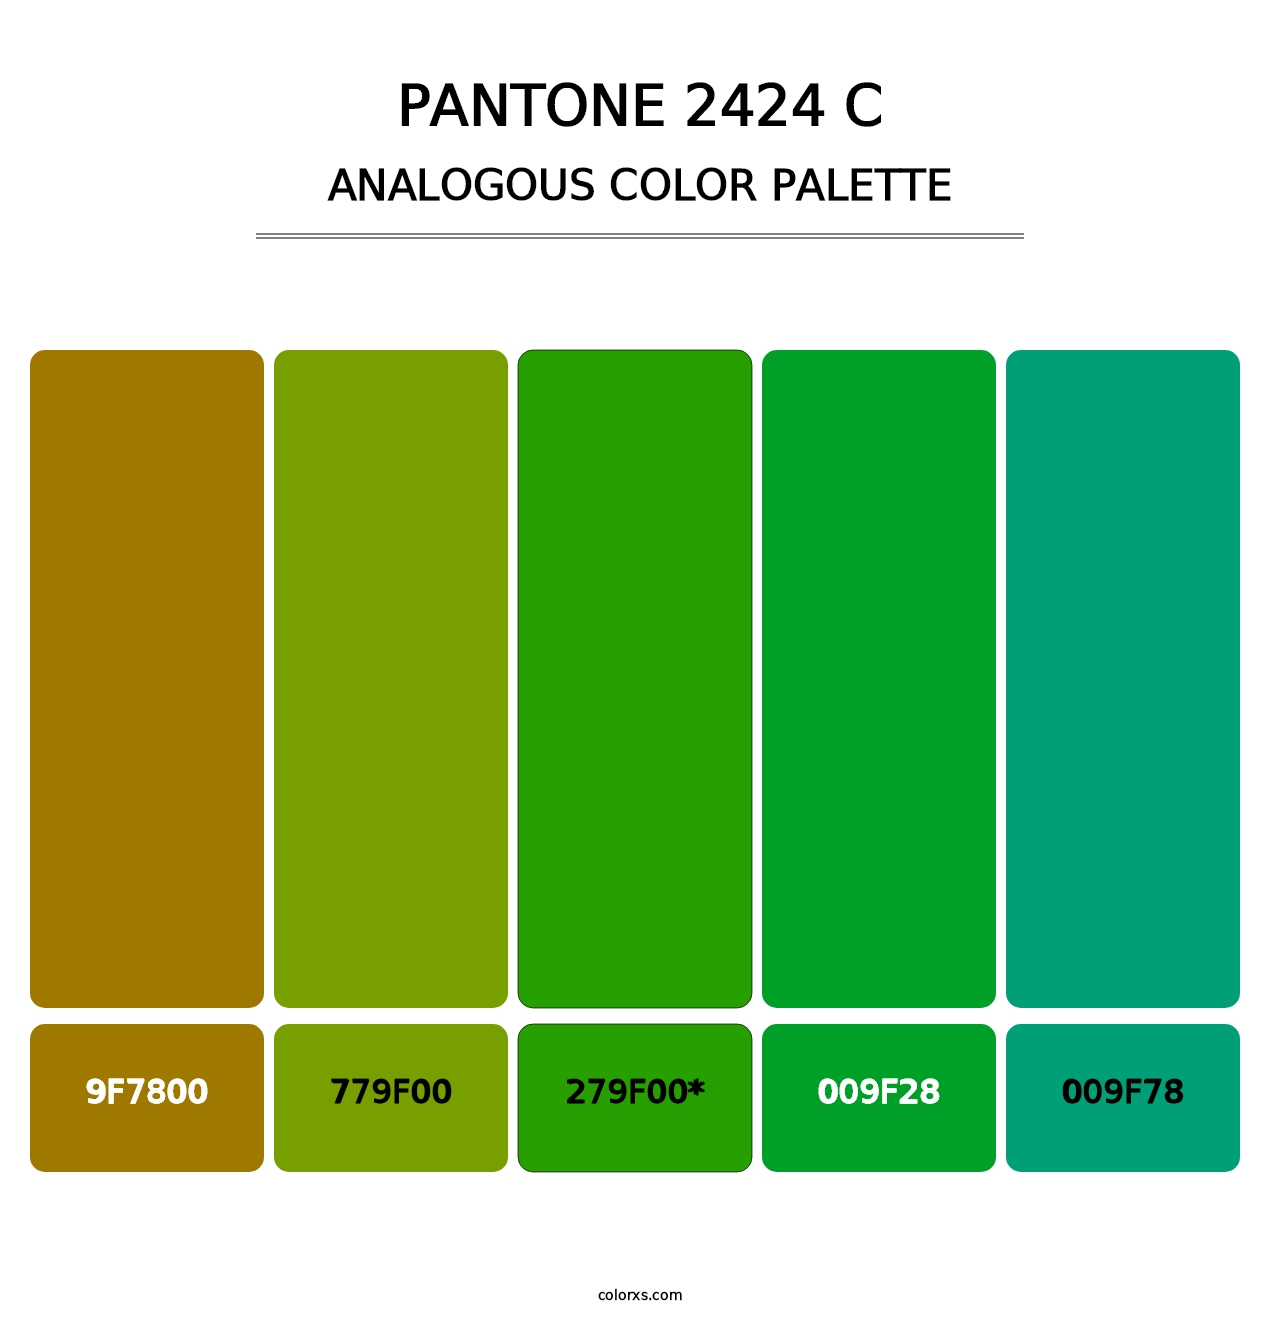 PANTONE 2424 C - Analogous Color Palette